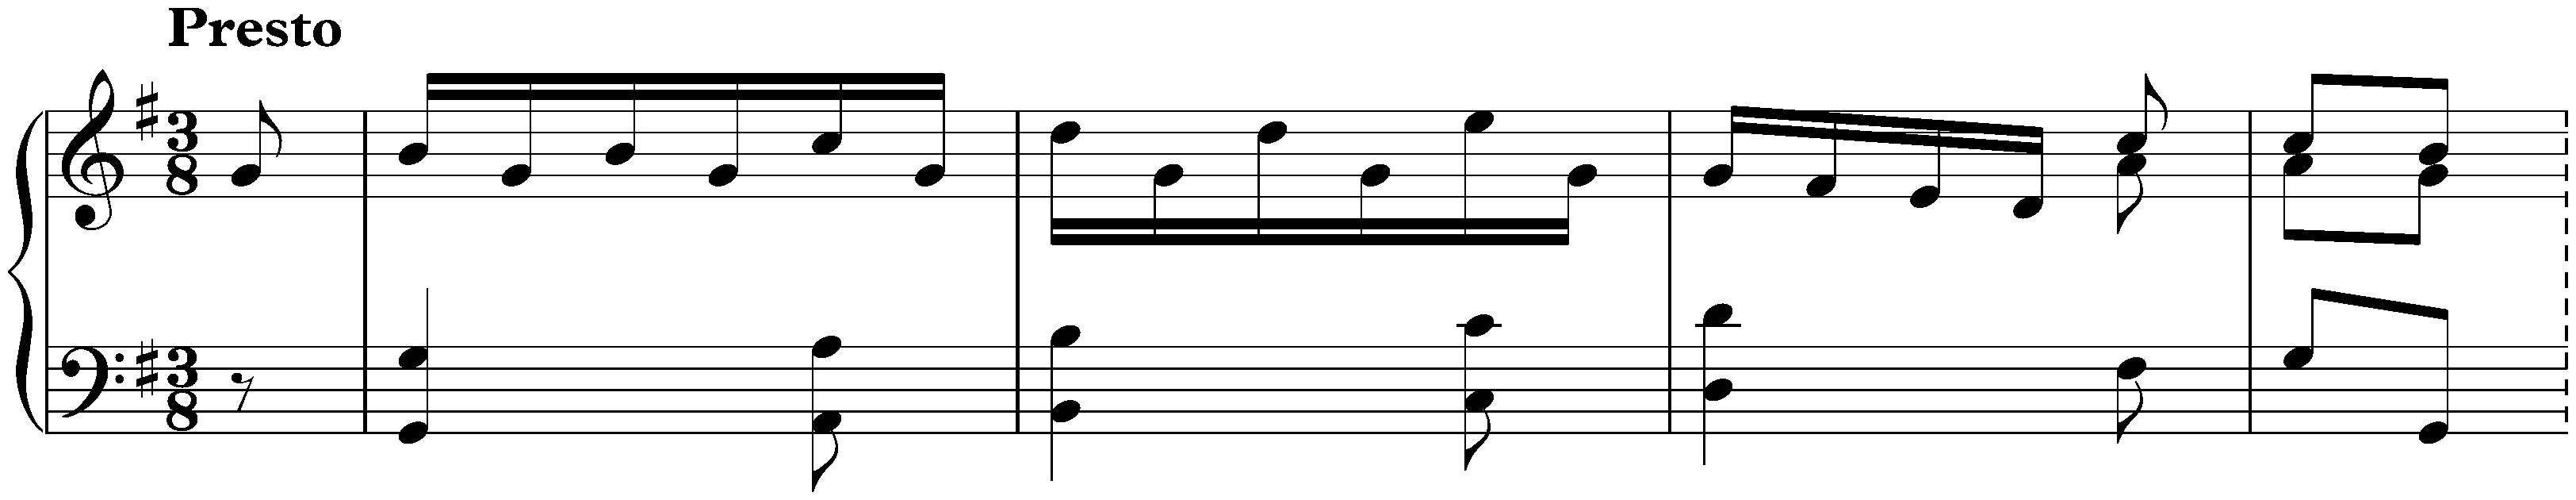 Sonata in G major, Hob. XVI:G1; 3. Finale: Presto